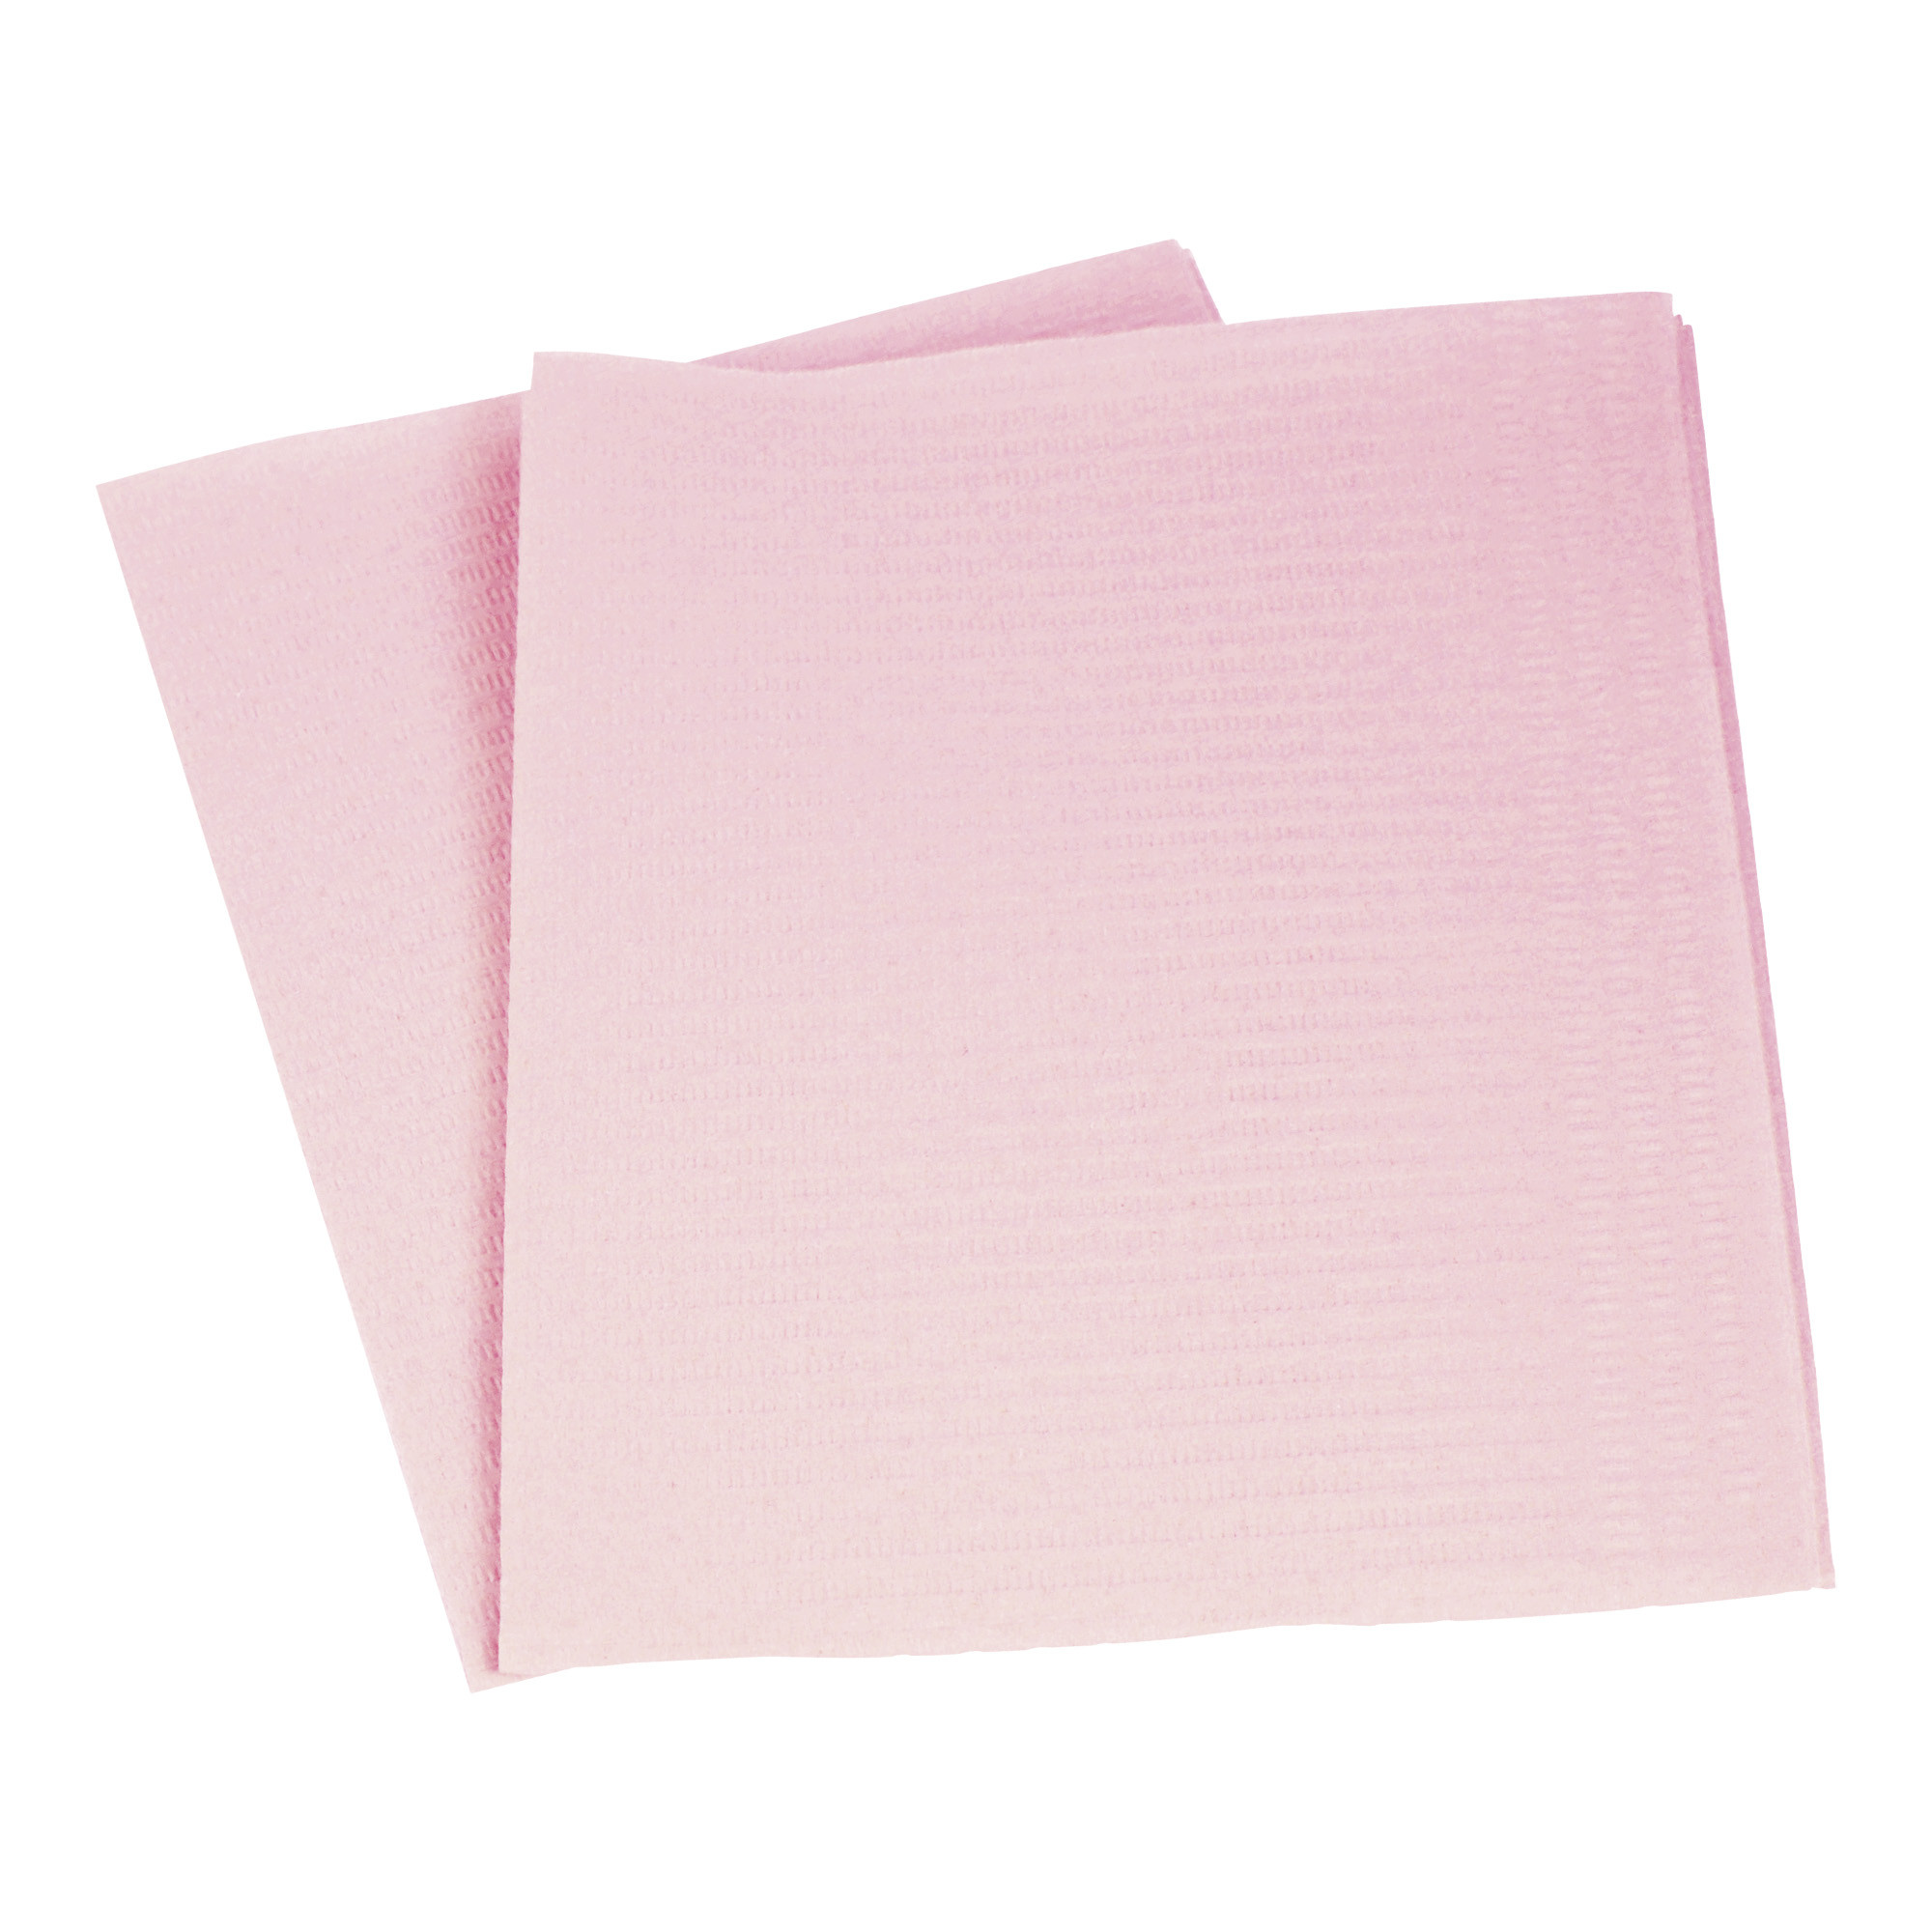 Serviettes jetables rose absorbantes et résistantes aux liquides  33 x 45 cm 500 pc